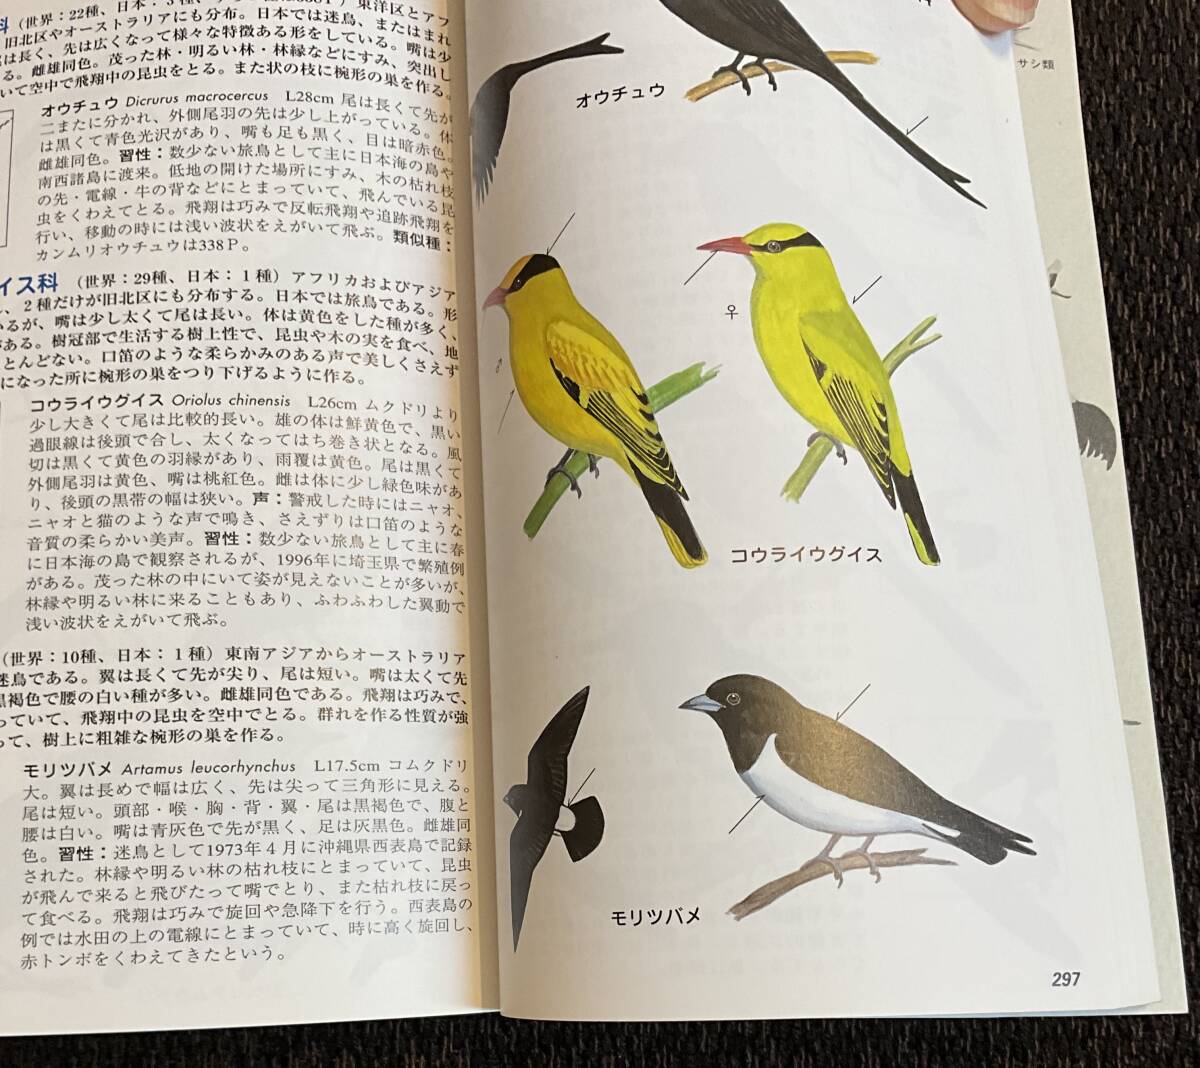 [ поле гид японский дикая птица больше . модифицировано . версия ] Kouya . 2, Япония дикая птица. .